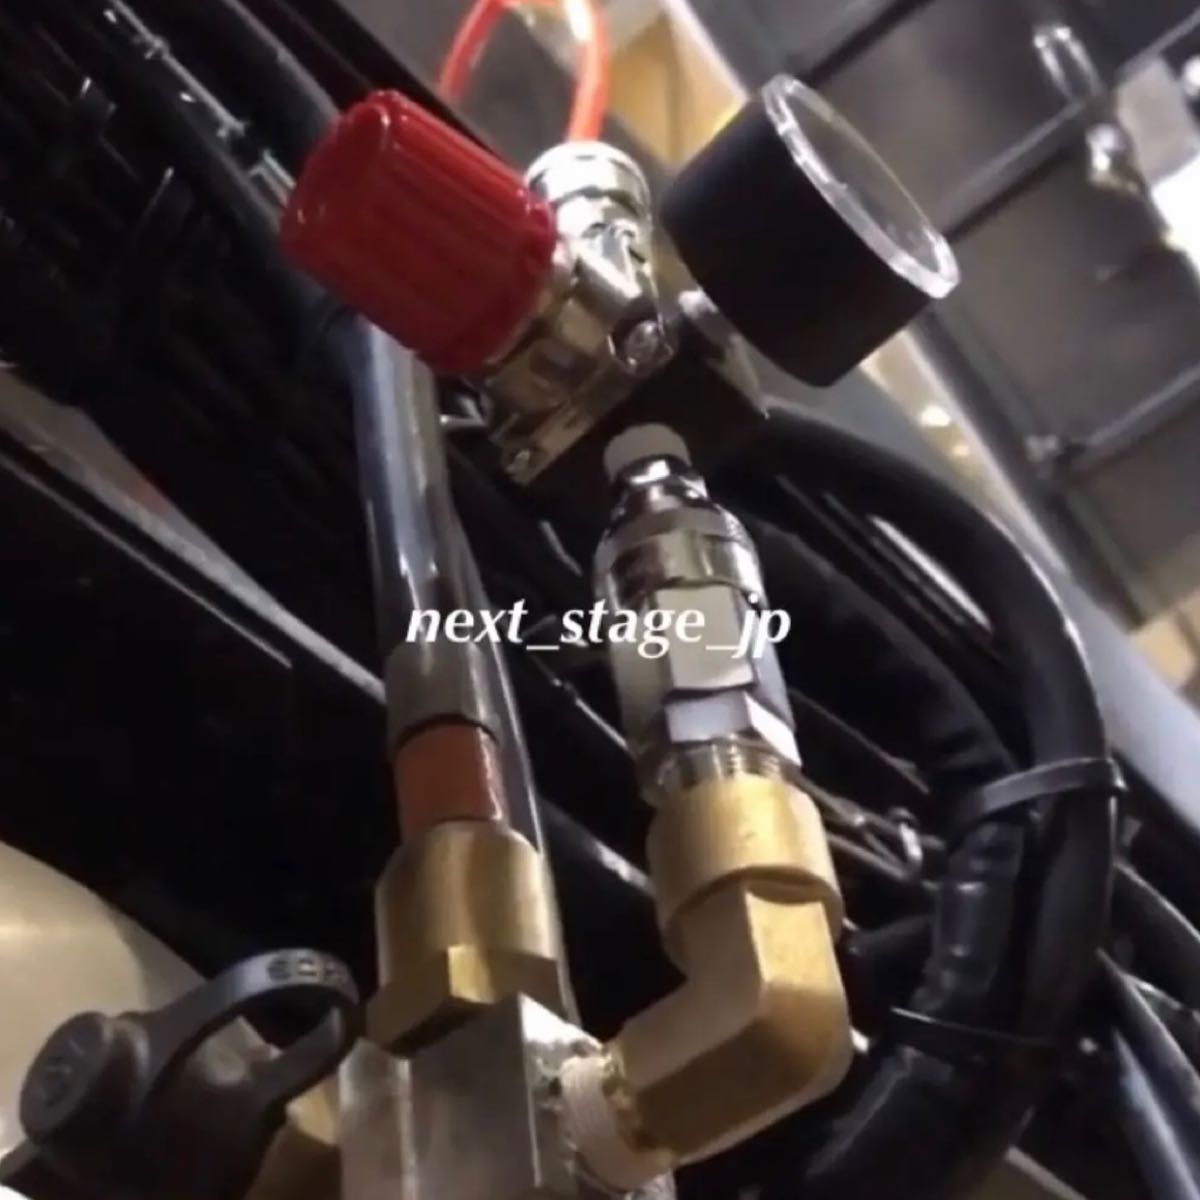 【New ver!】17スーパーグレート専用 減圧エアー取り出しキット エアーレギュレーター ヤンキーホーン ビッグホーン 圧力計